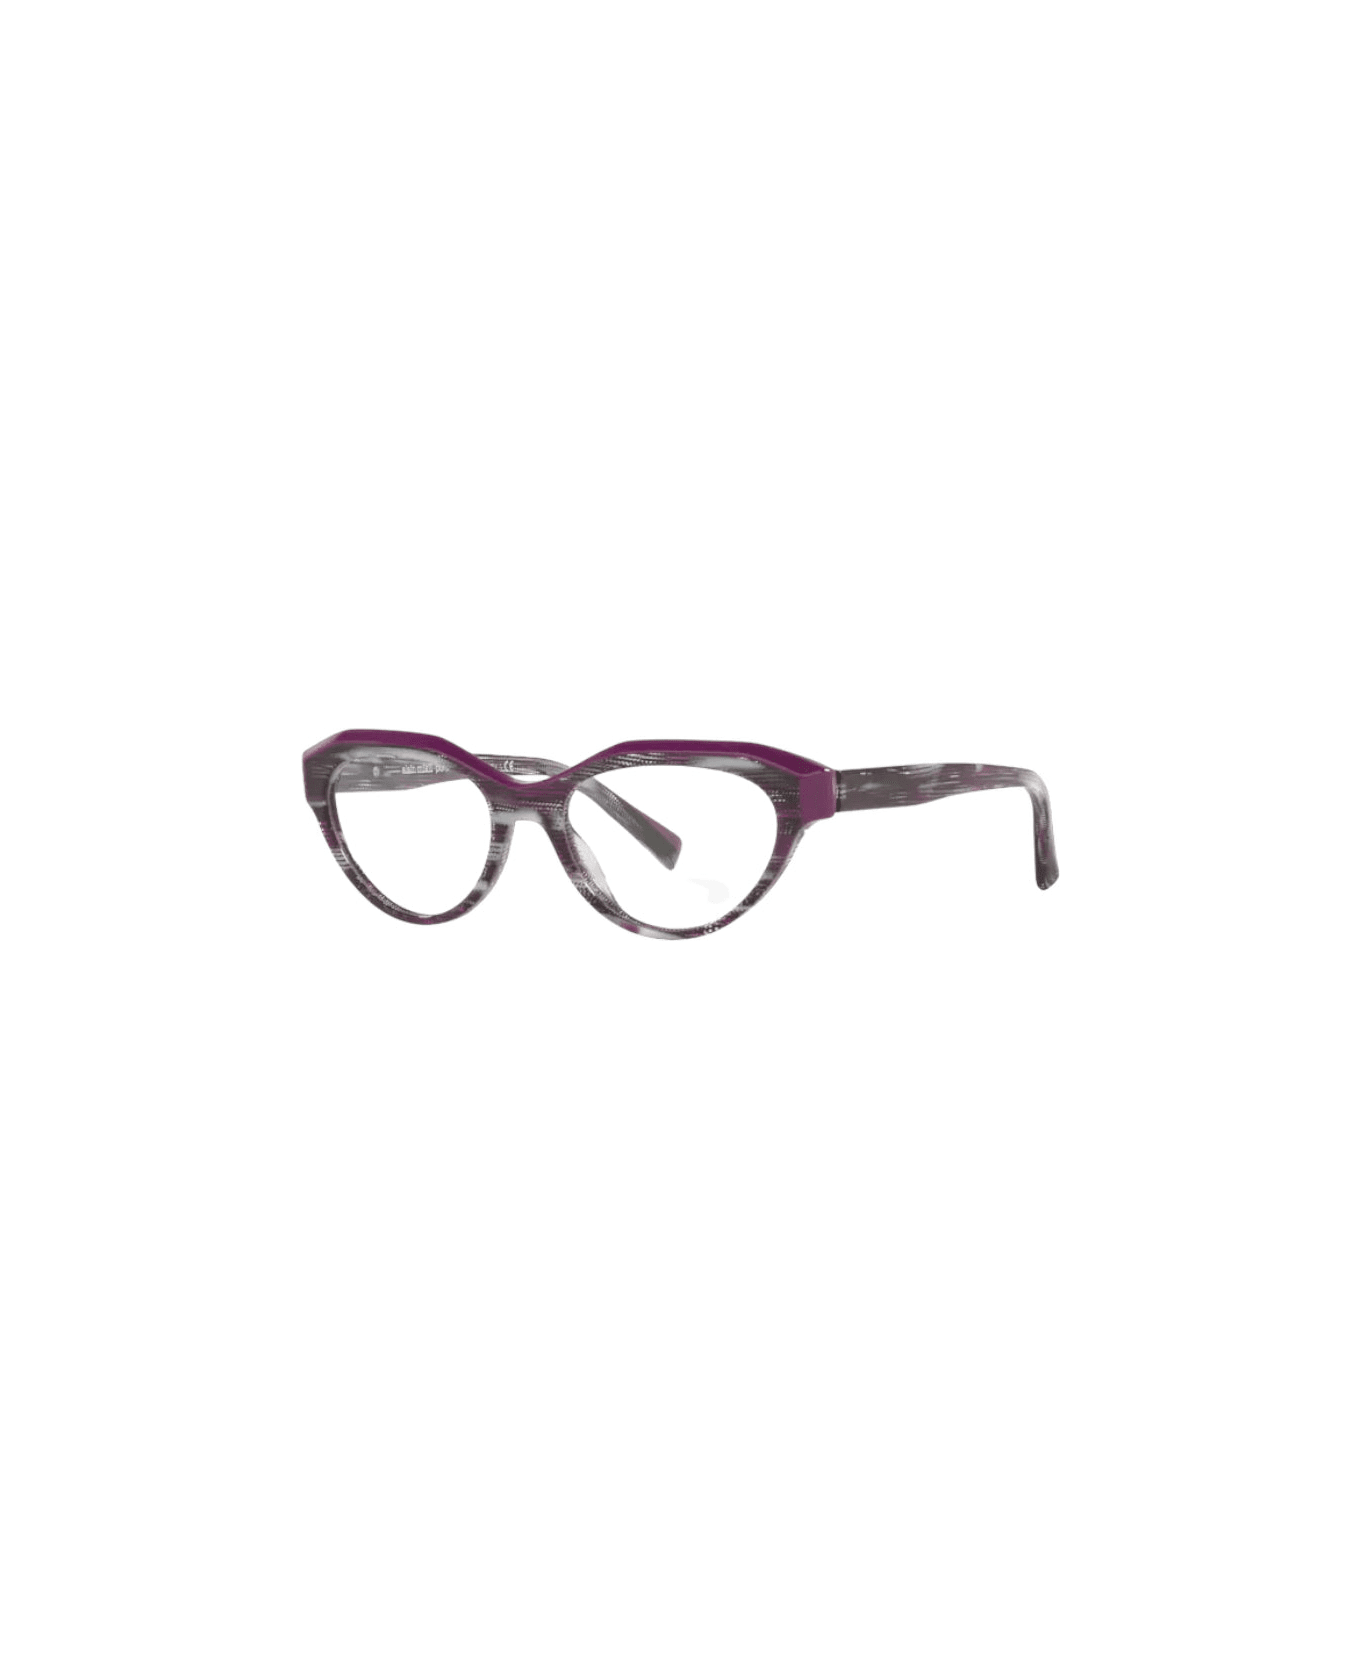 Alain Mikli A03098 - Black / Purple Glasses アイウェア